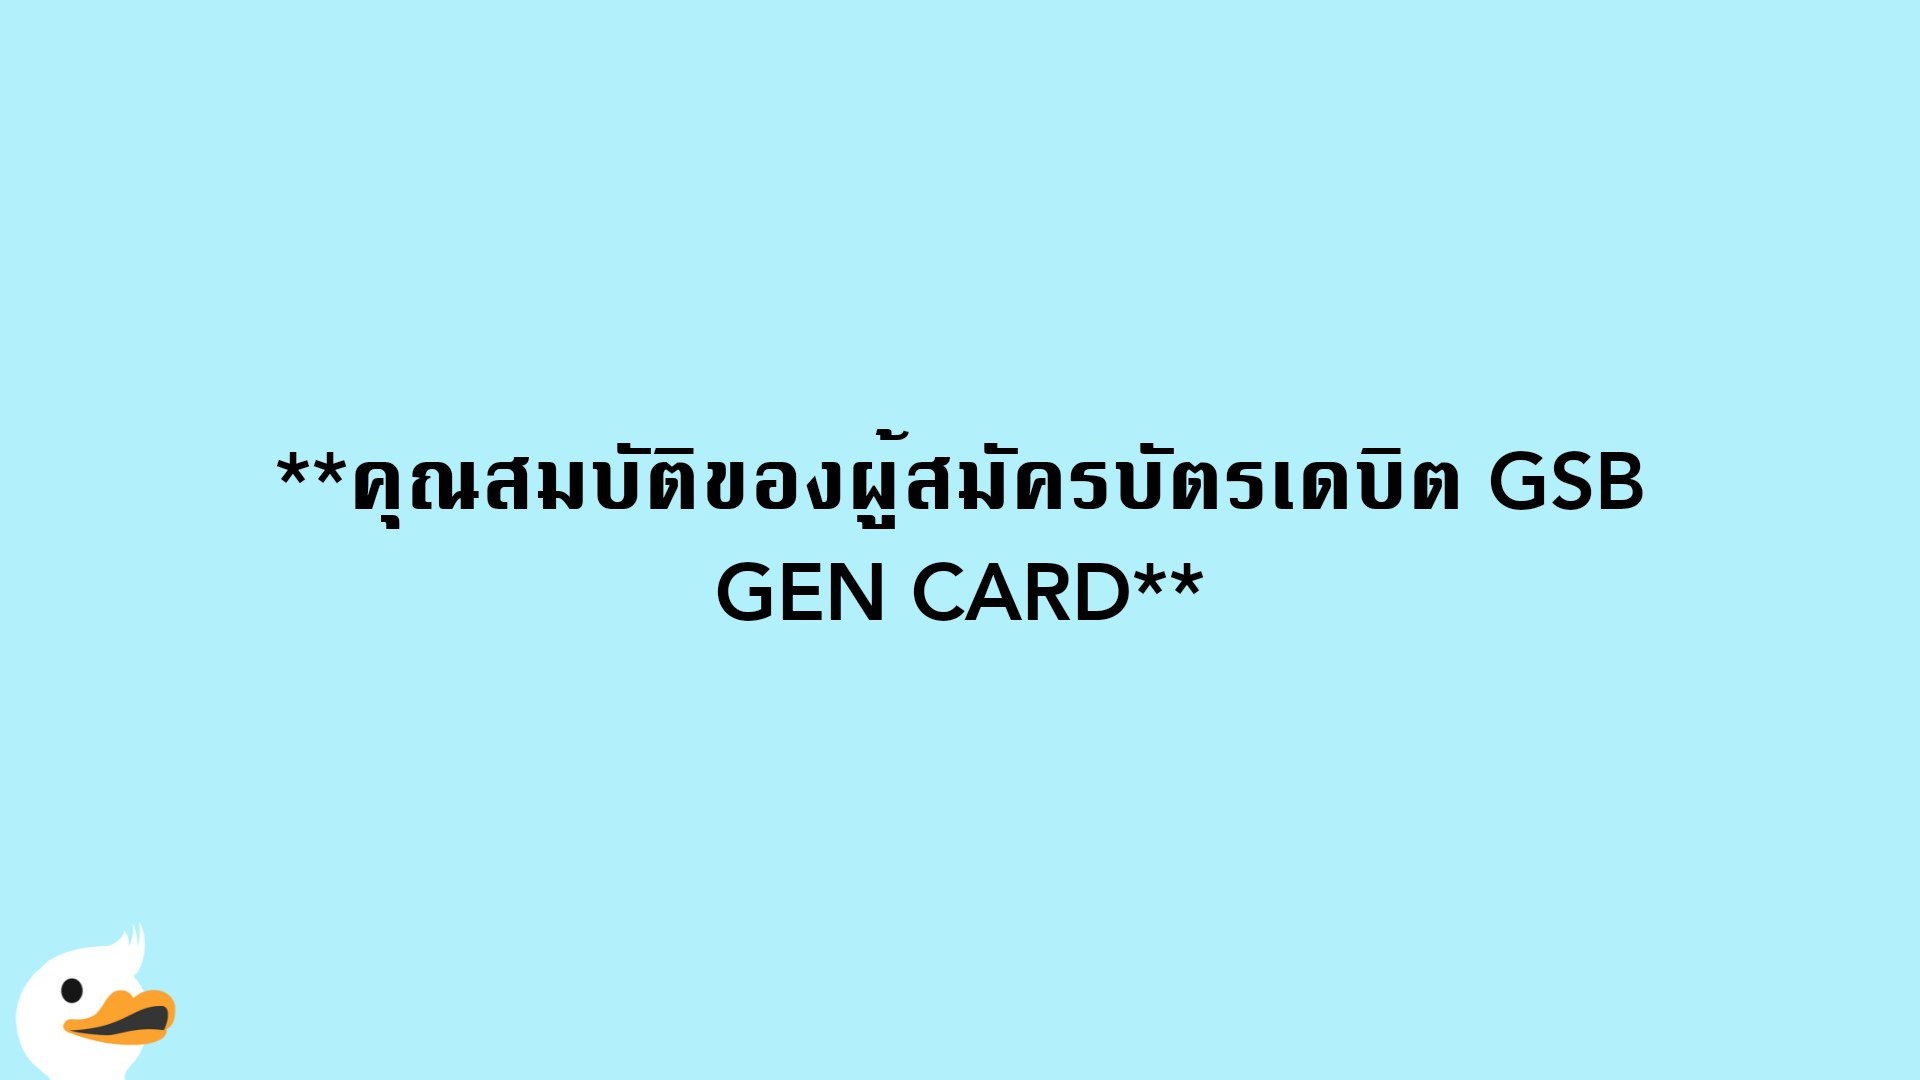 คุณสมบัติของผู้สมัครบัตรเดบิต GSB GEN CARD